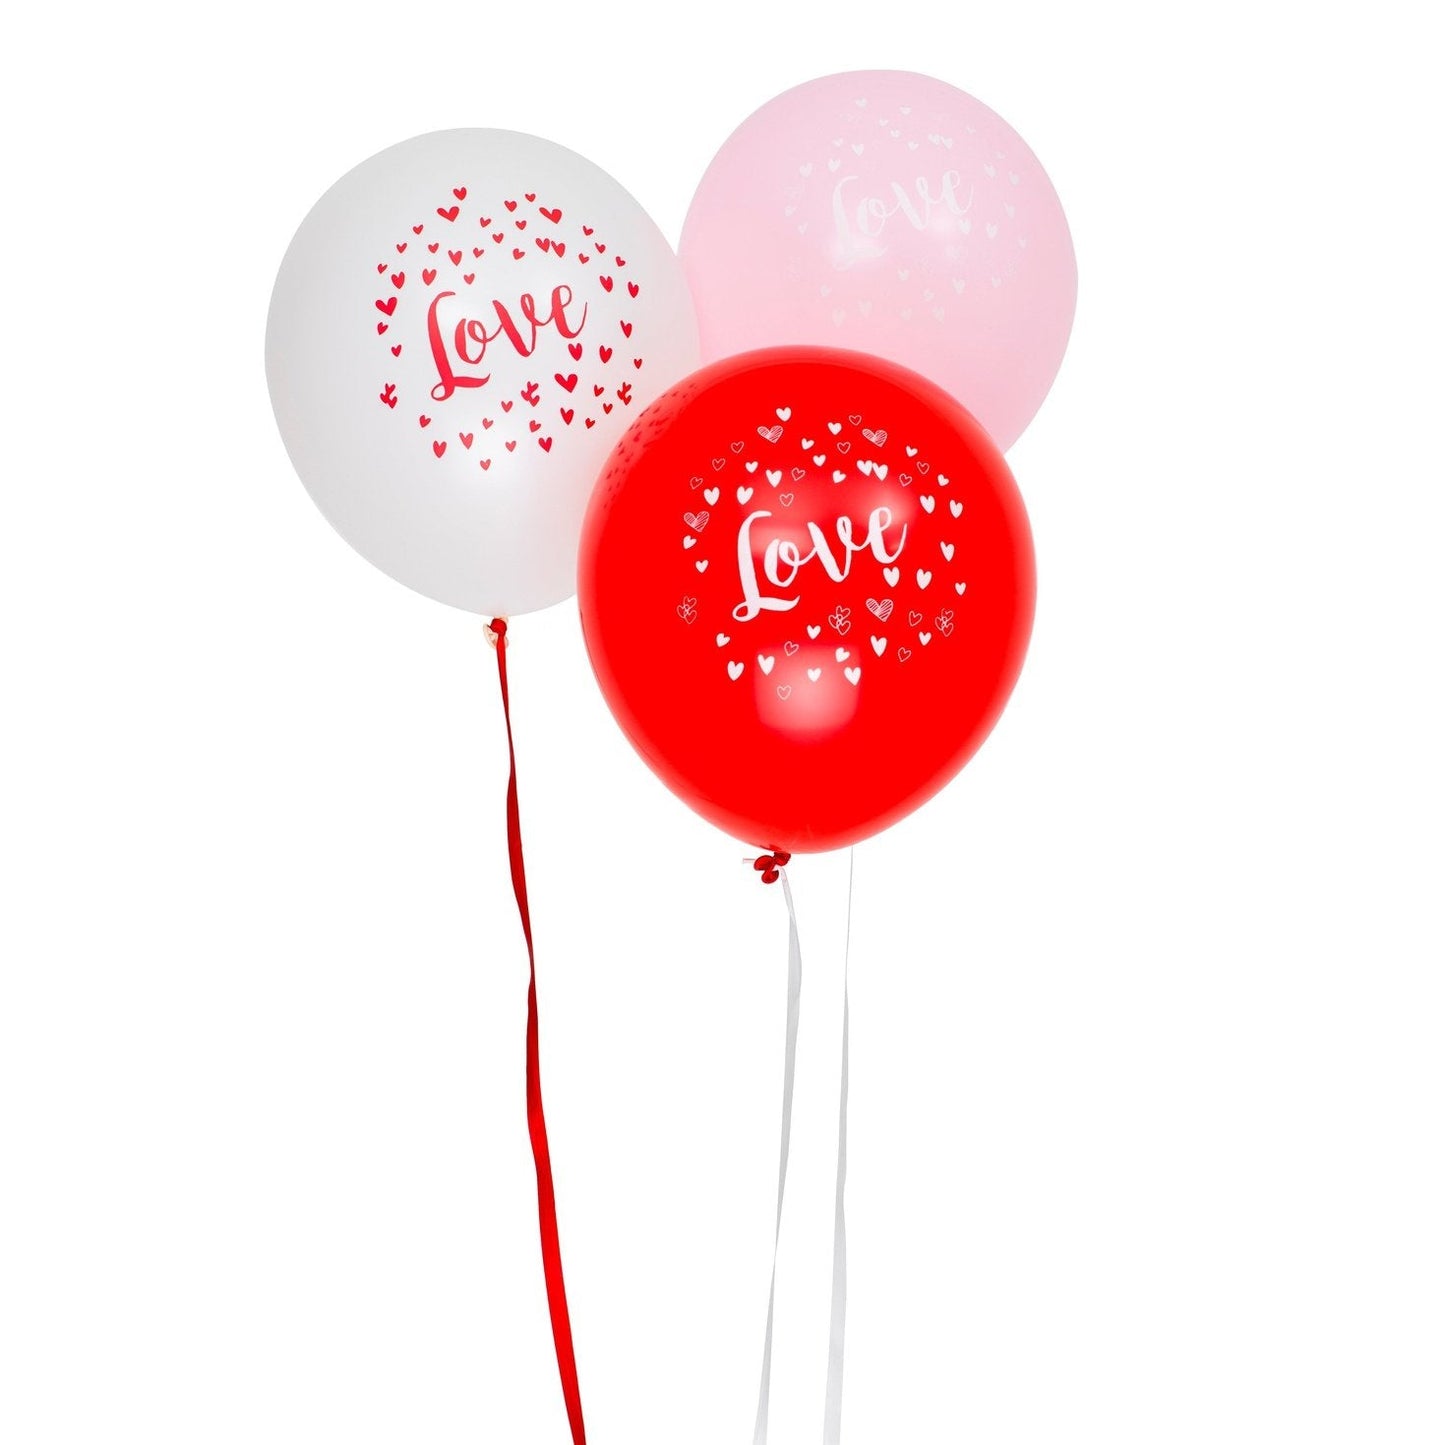 Ballonger 30cm med text "Love", 6st, röda, rosa och vita. DesignHouse95 - Ballonggrossist - Designhouse95 - Grossist Ballonger - Snabba Leveranser - Engångsartiklar, Student, Jul, Nyår, Fest, Kalas